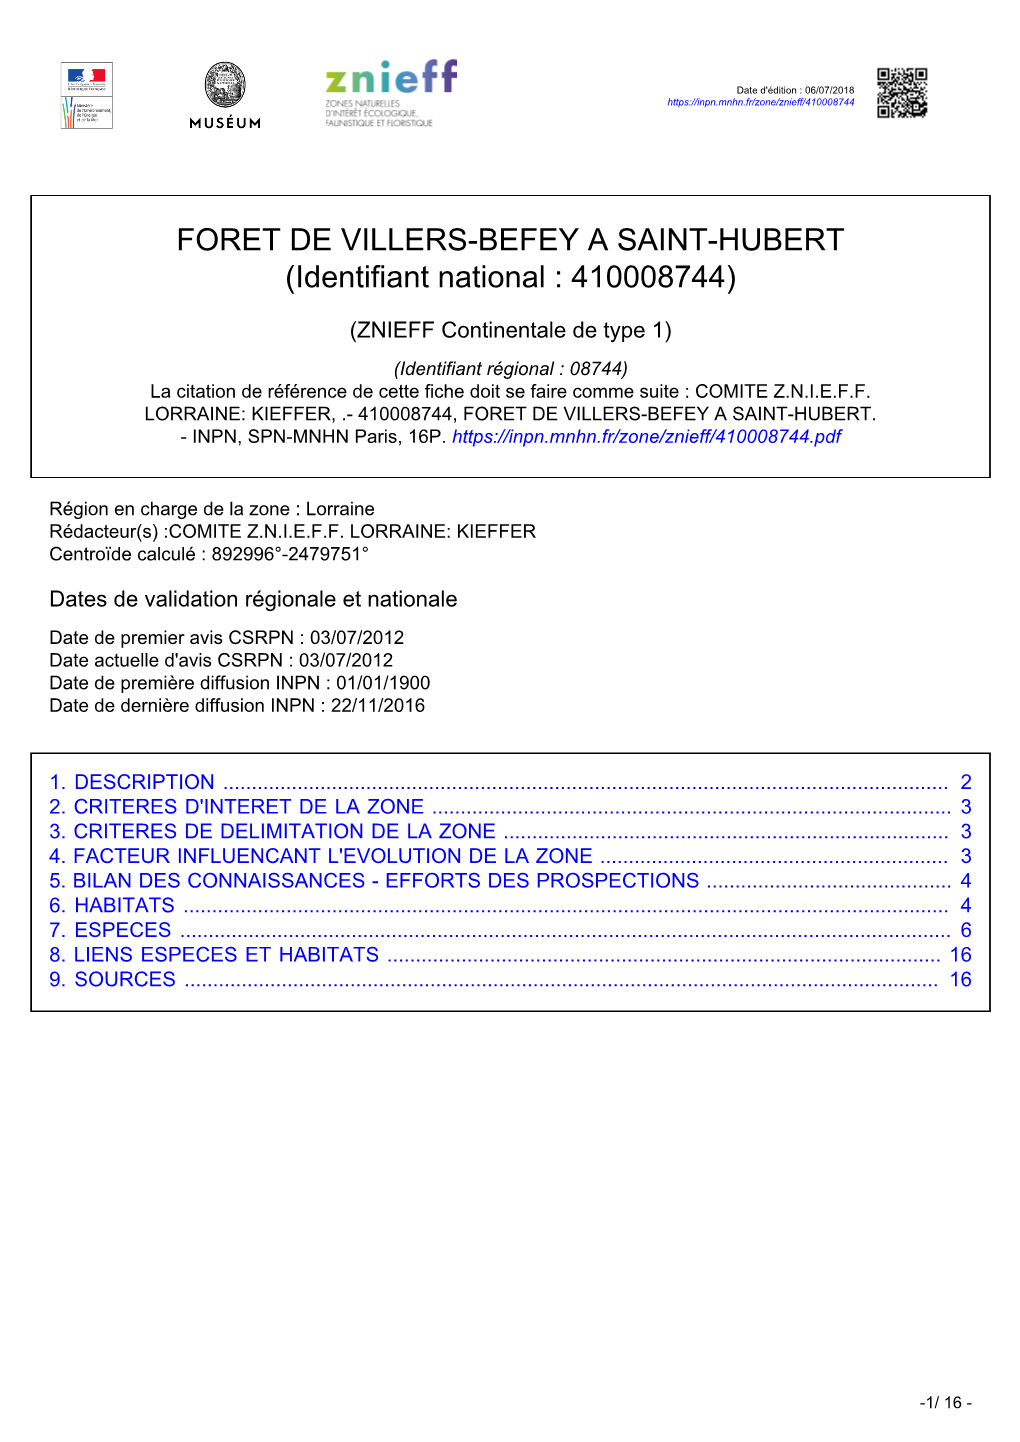 FORET DE VILLERS-BEFEY a SAINT-HUBERT (Identifiant National : 410008744)